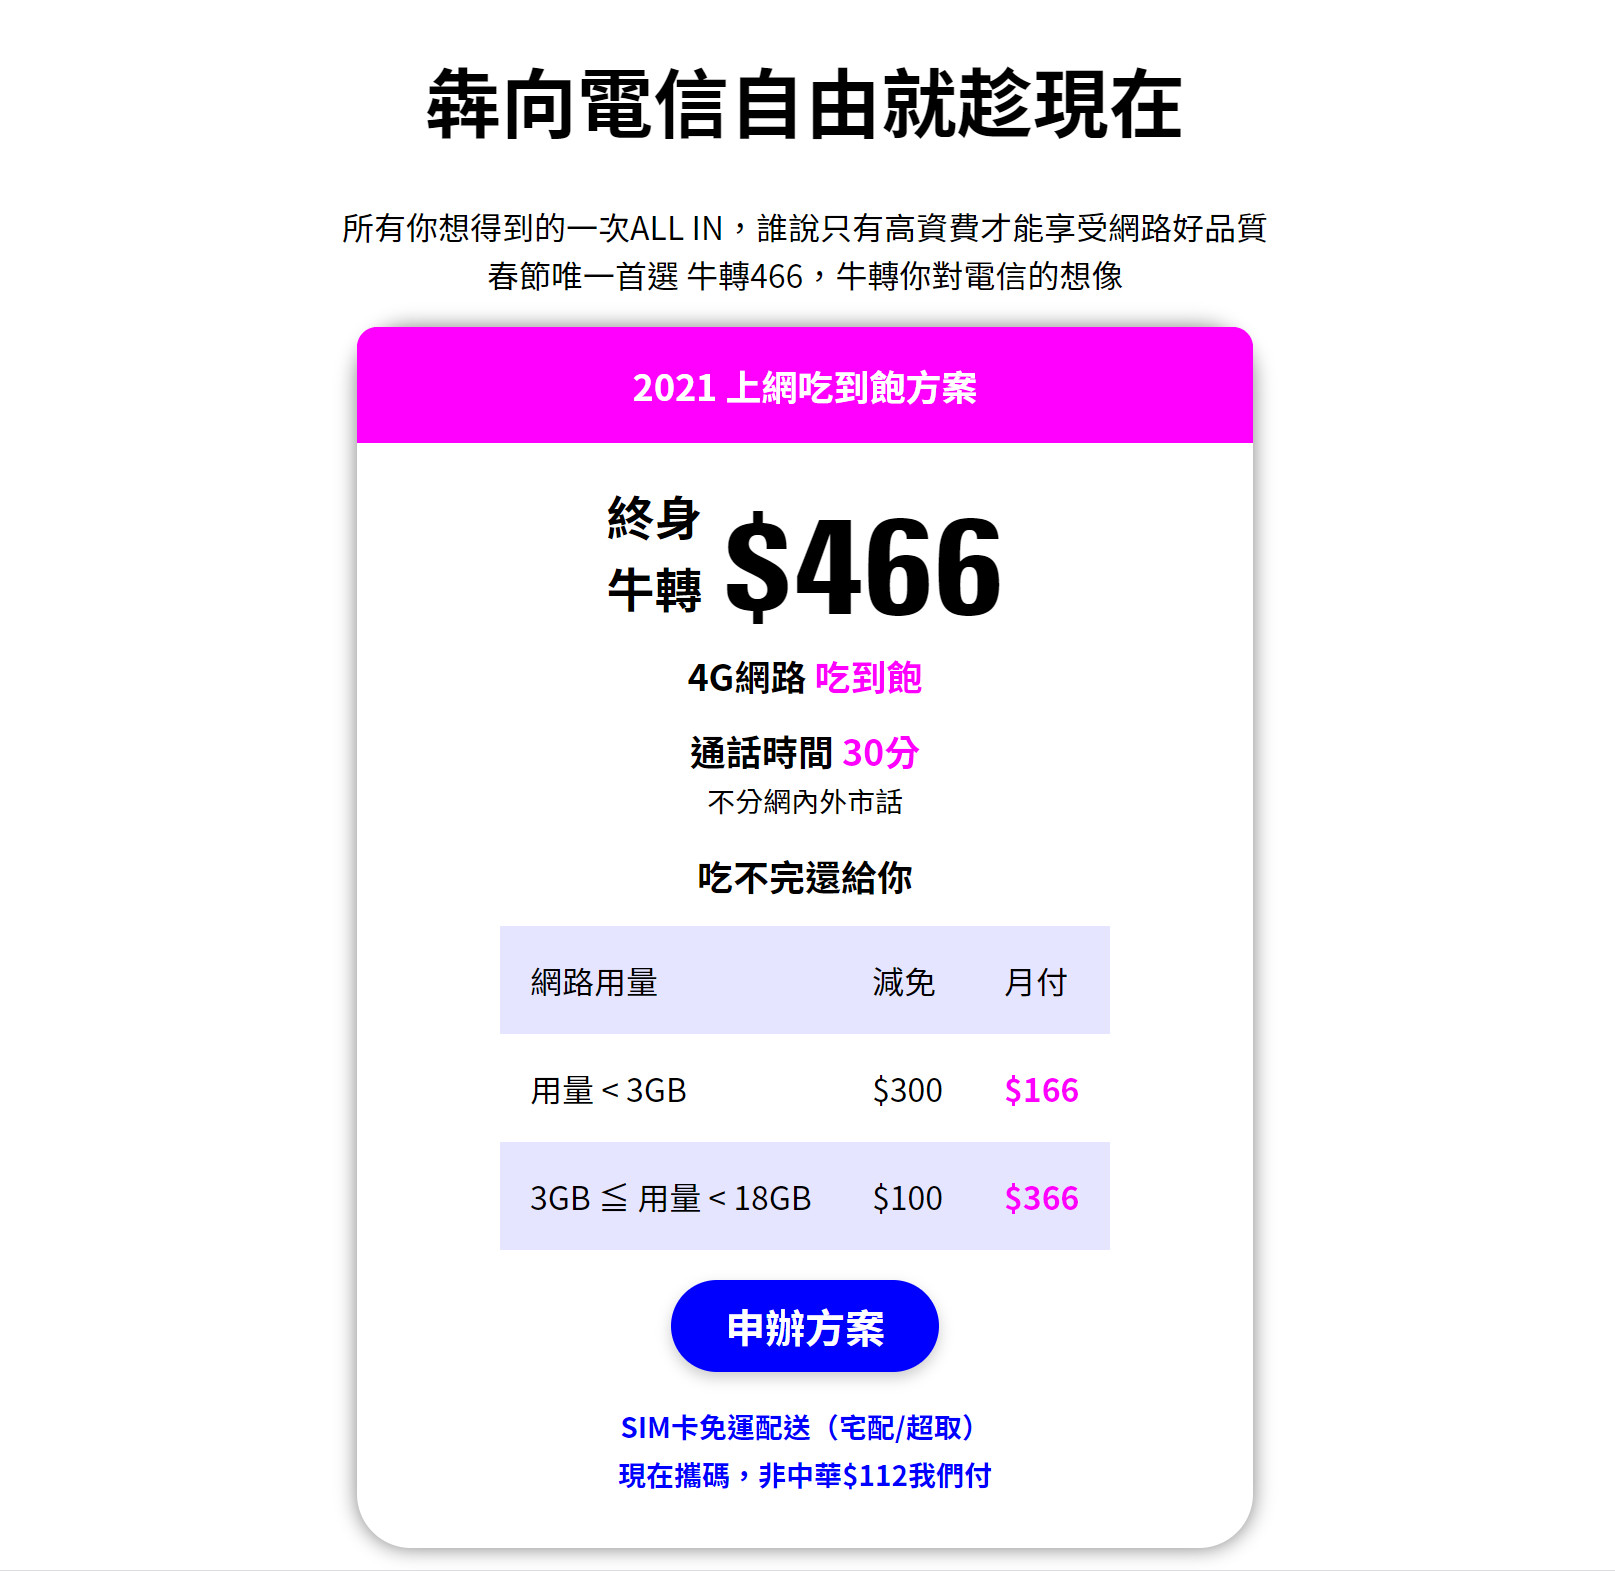 【無框行動】新春專案，中華電信大4G網路吃到飽466元，低流量只要166元!超適合搭配台灣之星雙11專案。 - 無框行動公司 - 敗家達人推薦